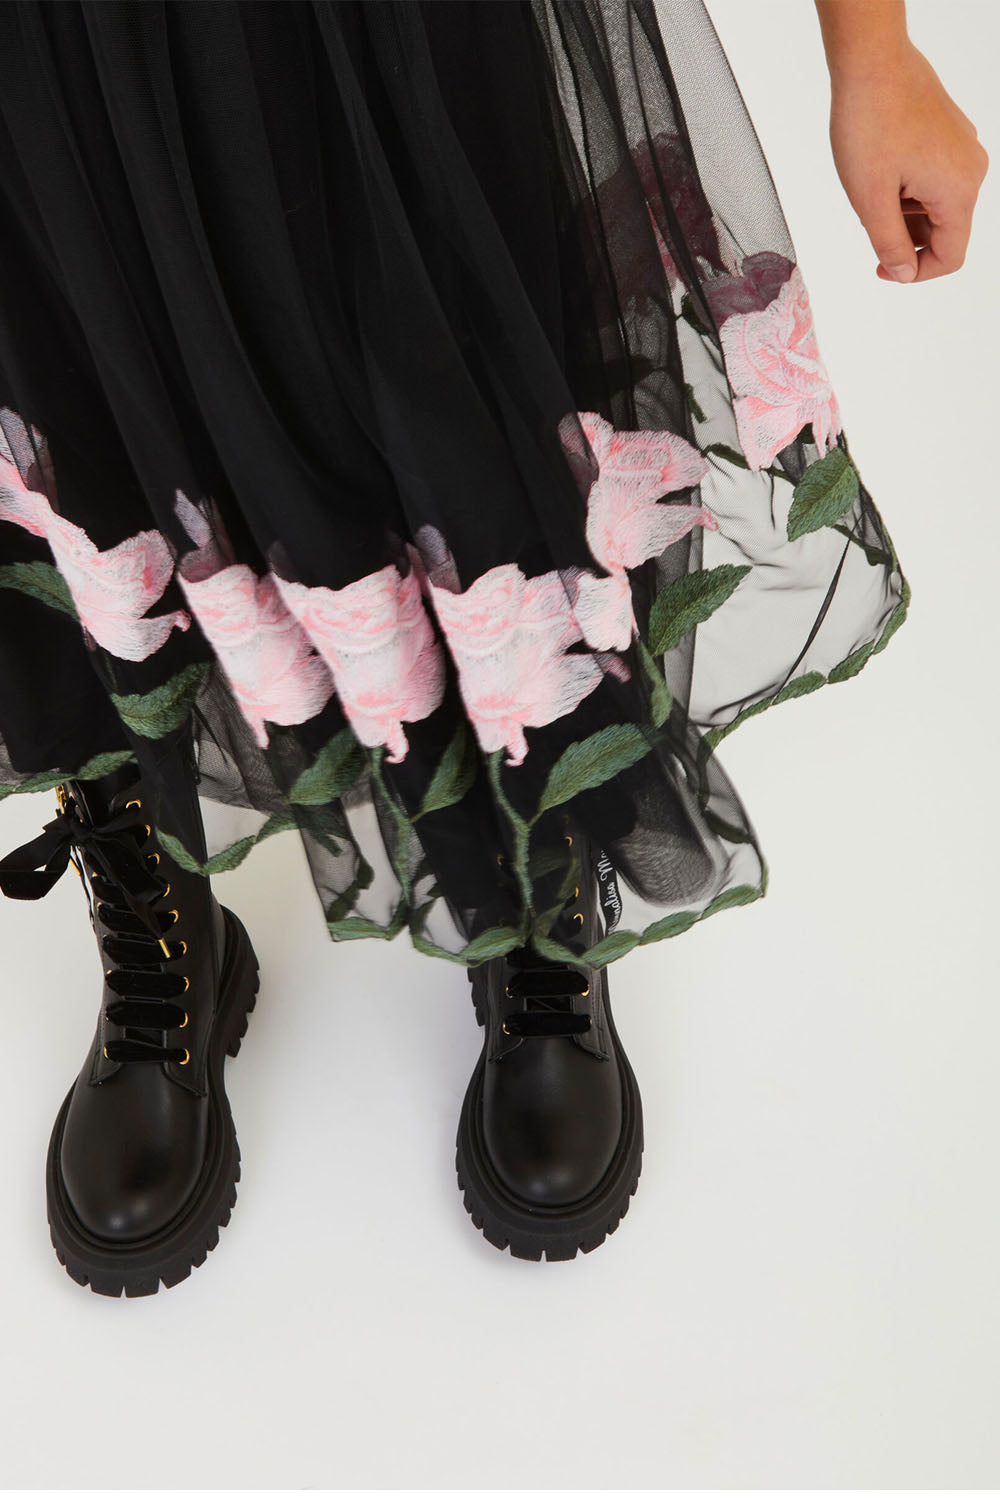 Black Tulle Rose Skirt for Girls